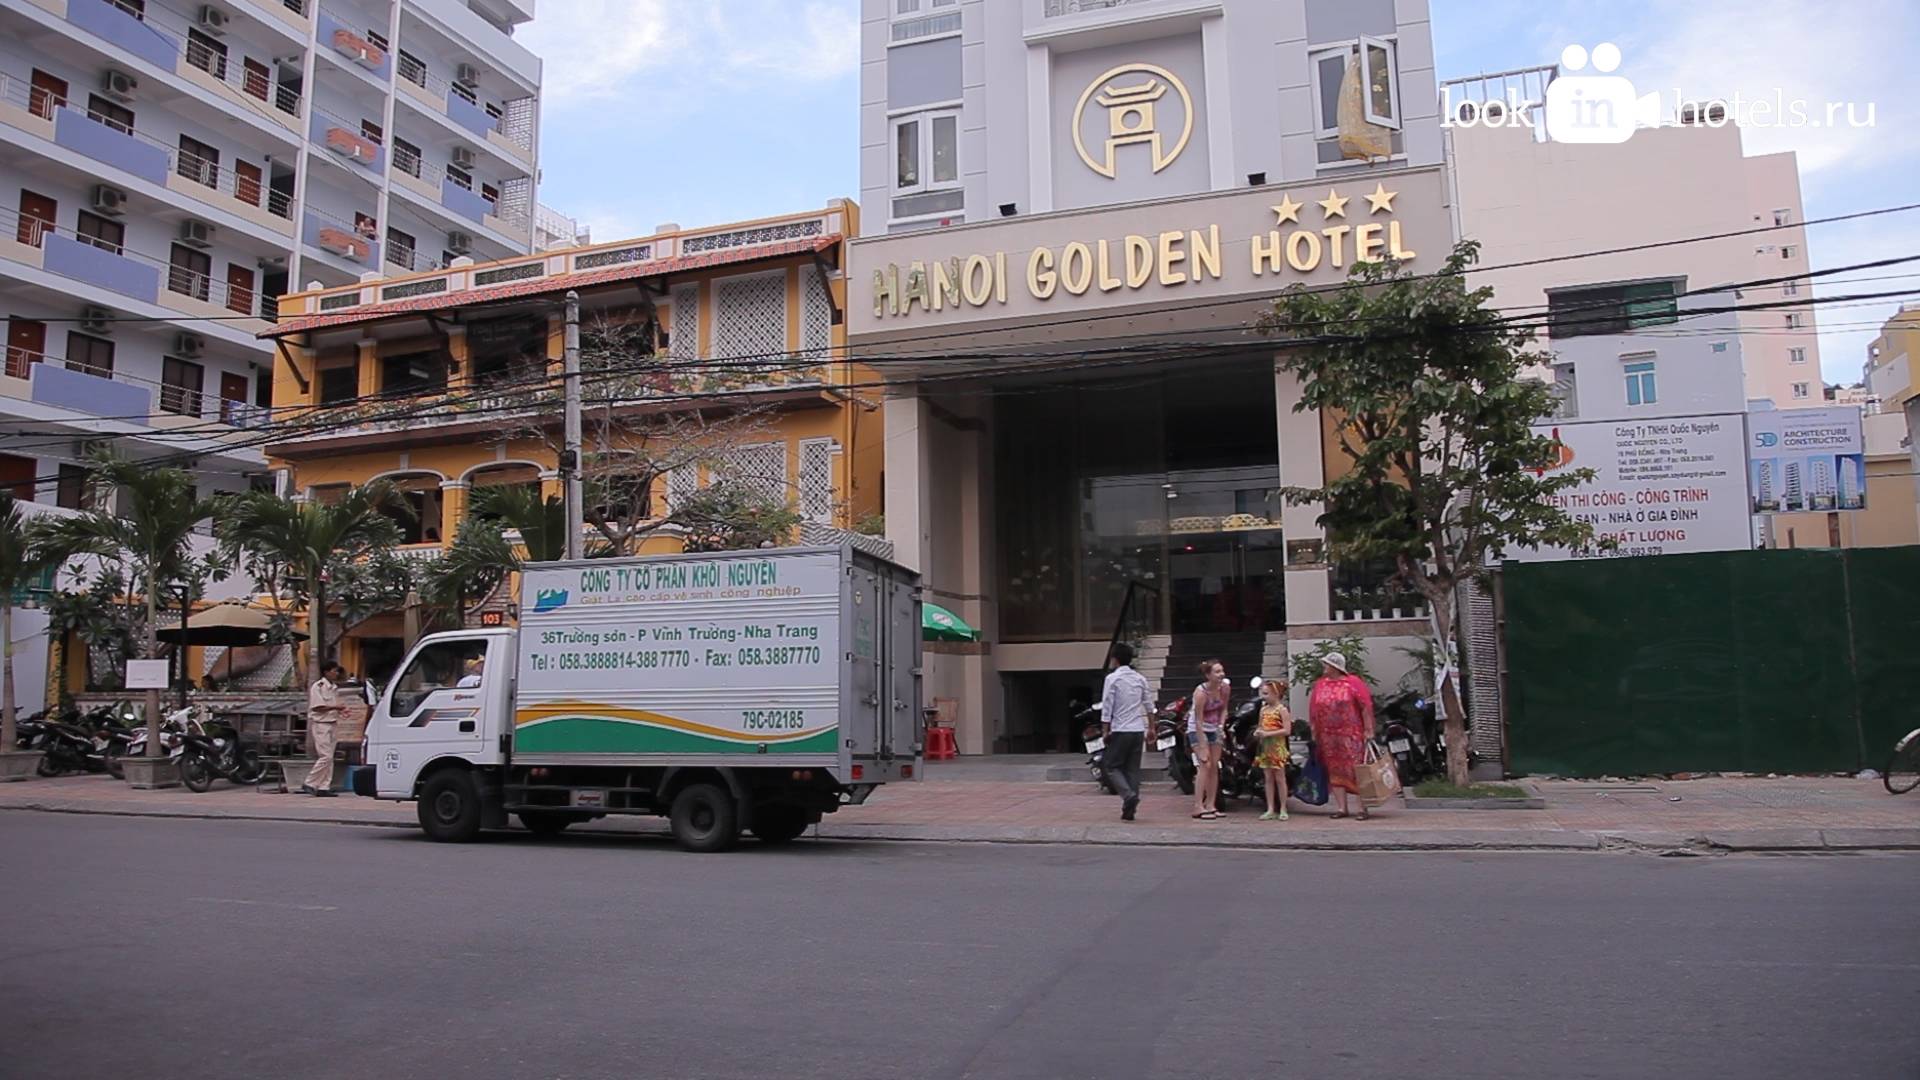 Ханой Голден Хотел 3* (Hanoi Golden Hotel 3*) в Нячанге